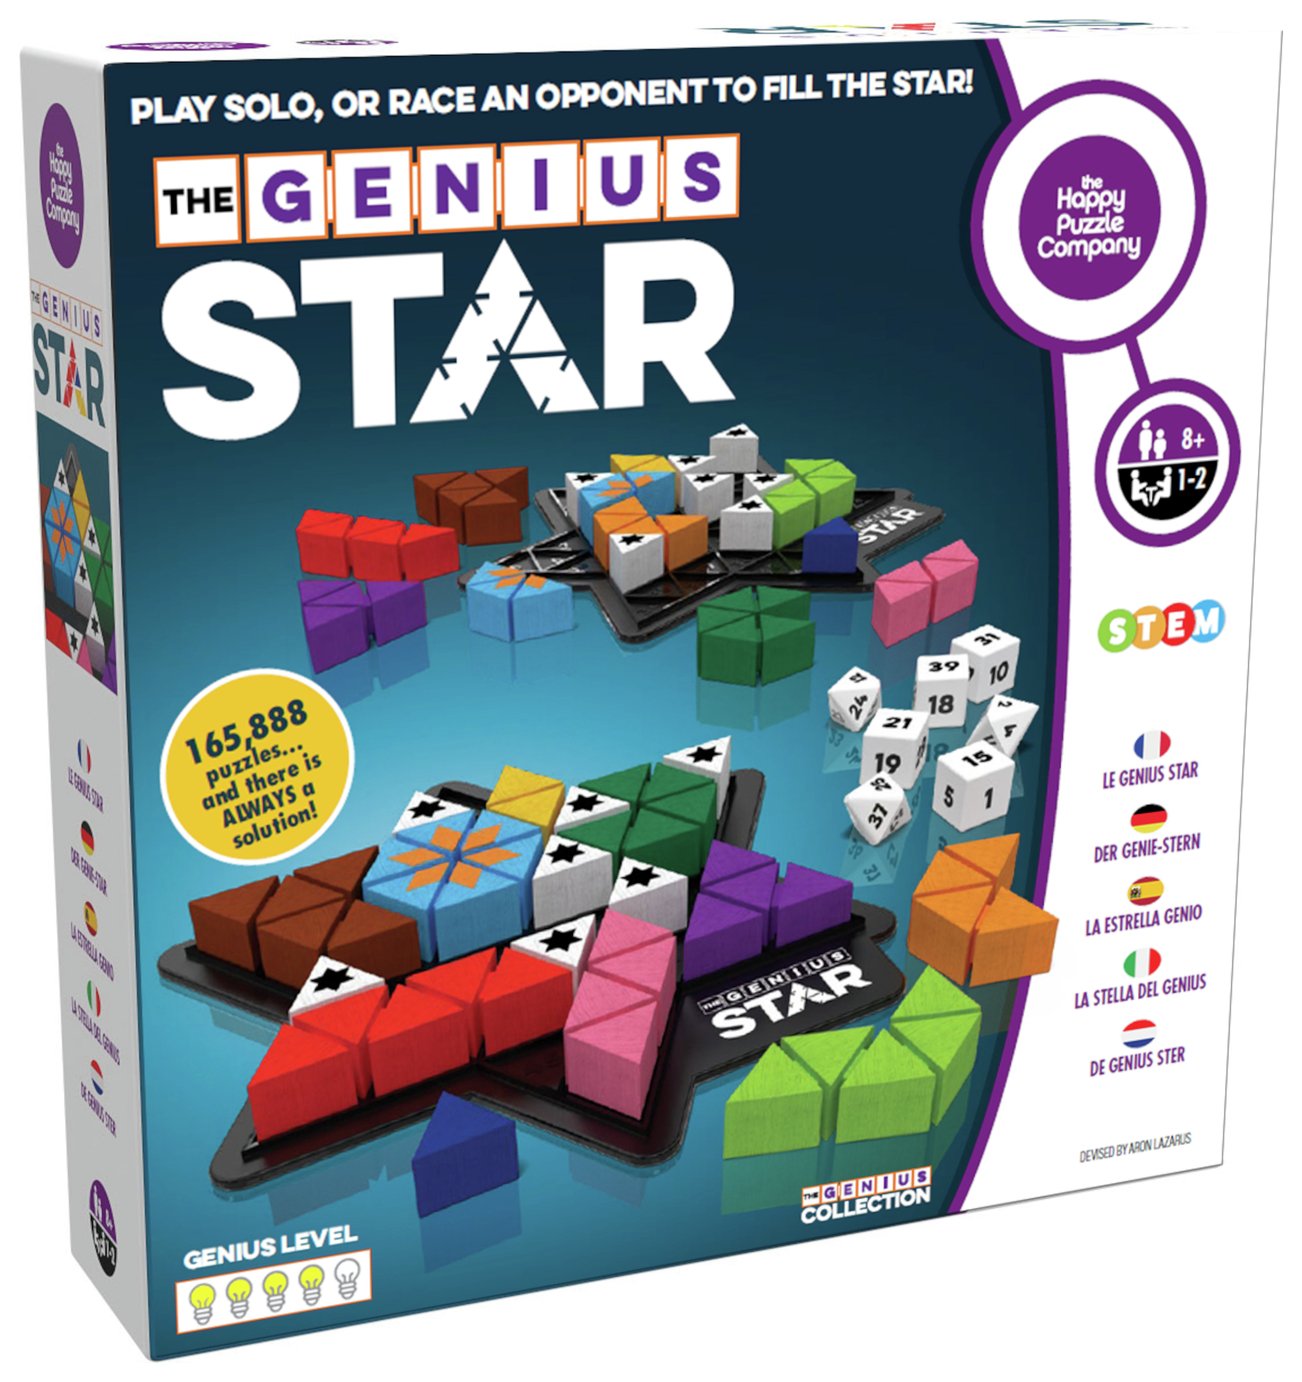 The Genius Star Puzzle Game